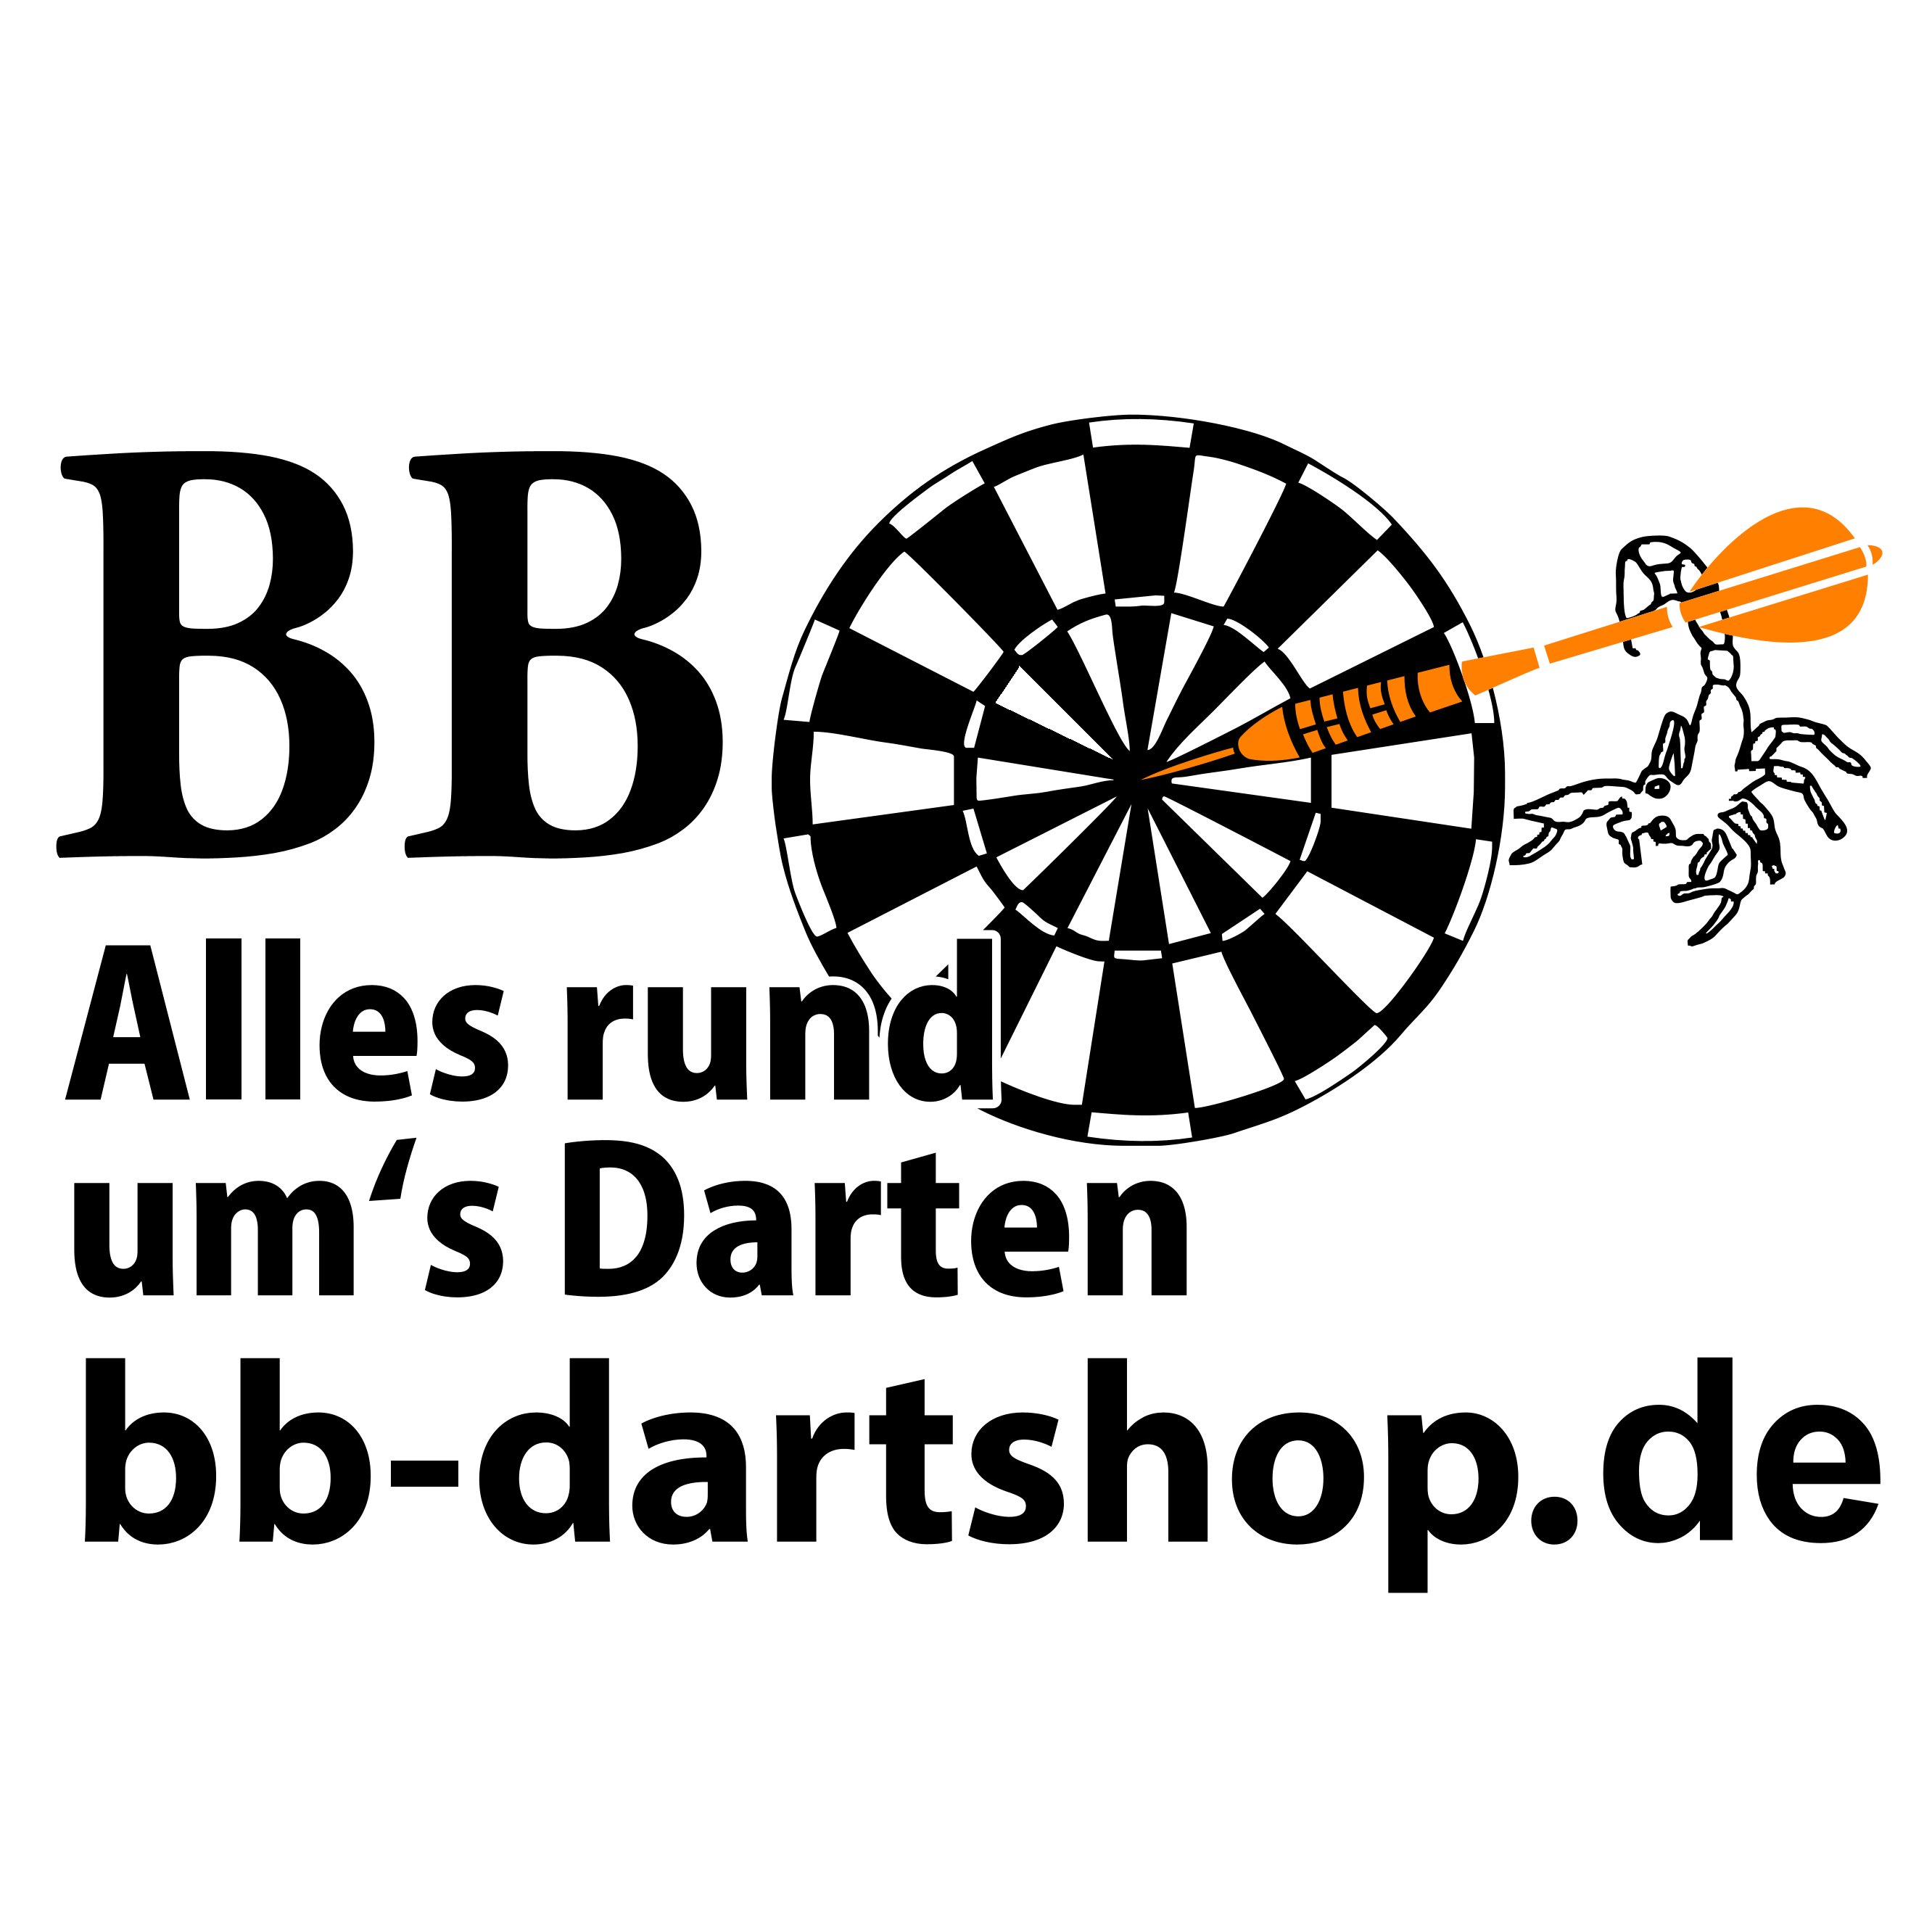 www.bb-dartshop.de-Logo